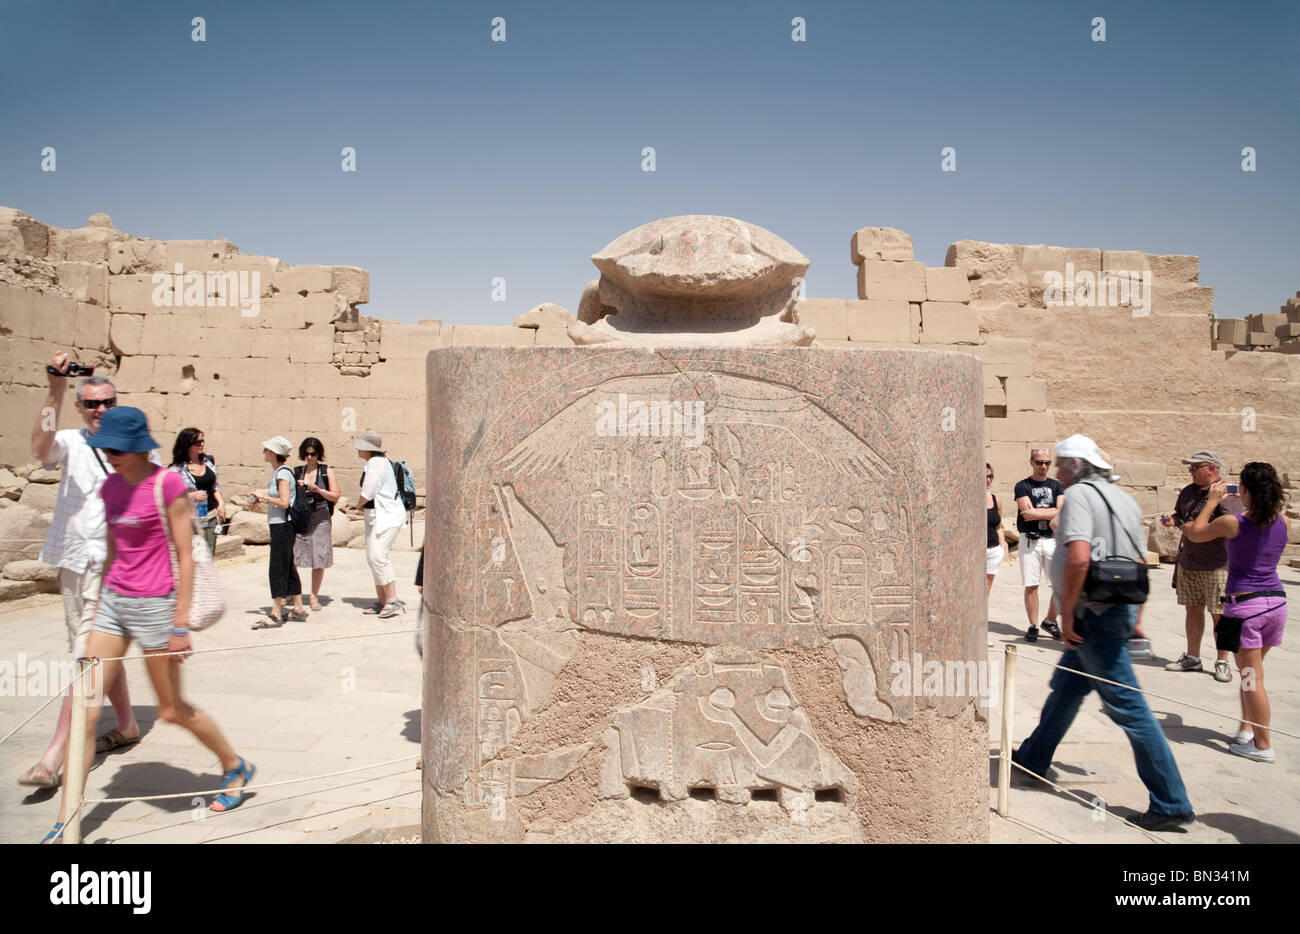 Les touristes à pied autour de la statue en pierre du scarabée pour la bonne chance, temple de Karnak, Louxor Égypte Banque D'Images